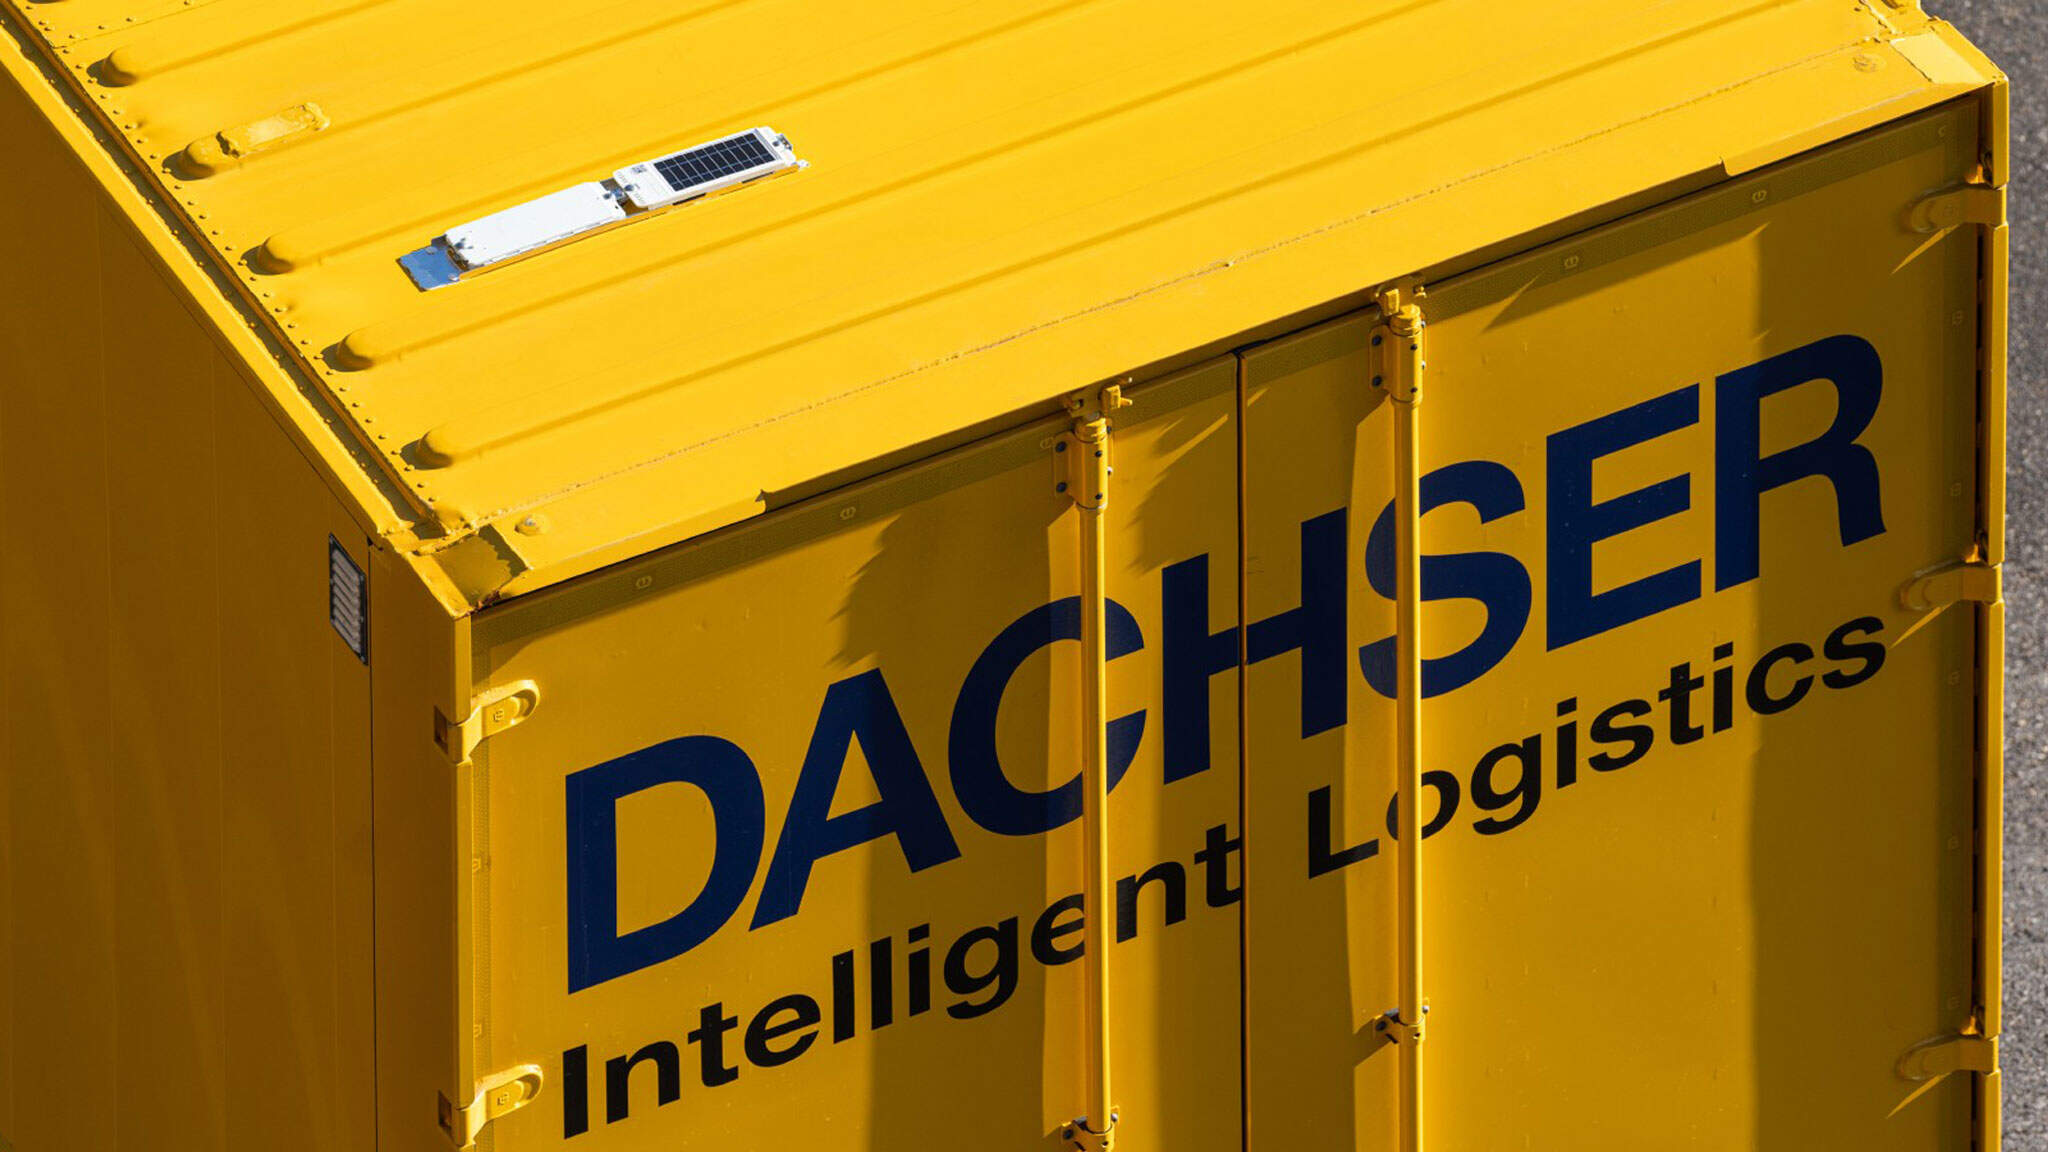 DACHSER har også udviklet en digital tvilling, der visualiserer processerne i det europæiske lastbiltransportnetværk. Soldrevne radiomoduler kortlægger position og ankomsttid for over 10.000 veksellad og trailere i tæt på realtid.